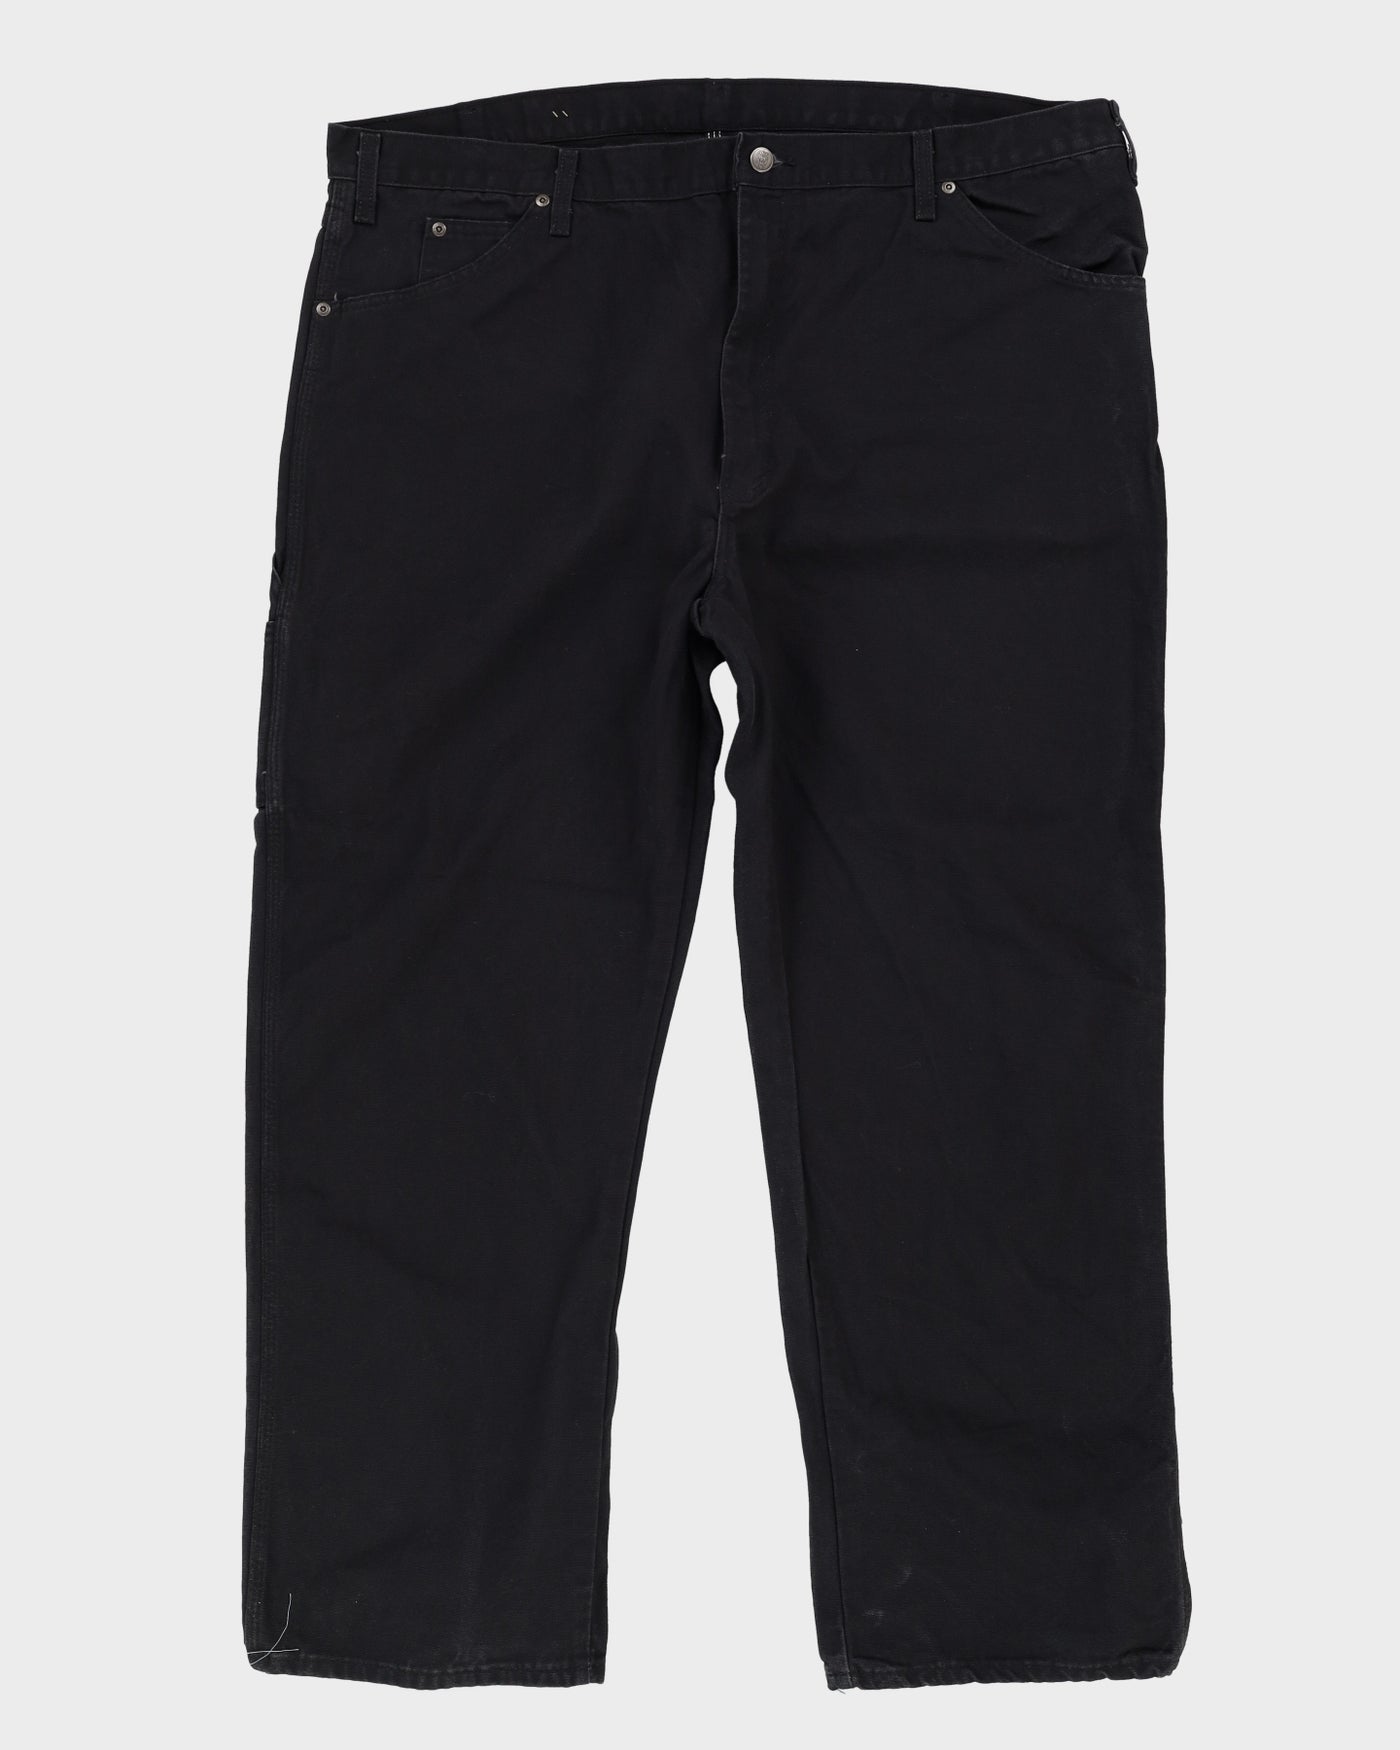 Dickies Black Workwear Jeans - W34 L31